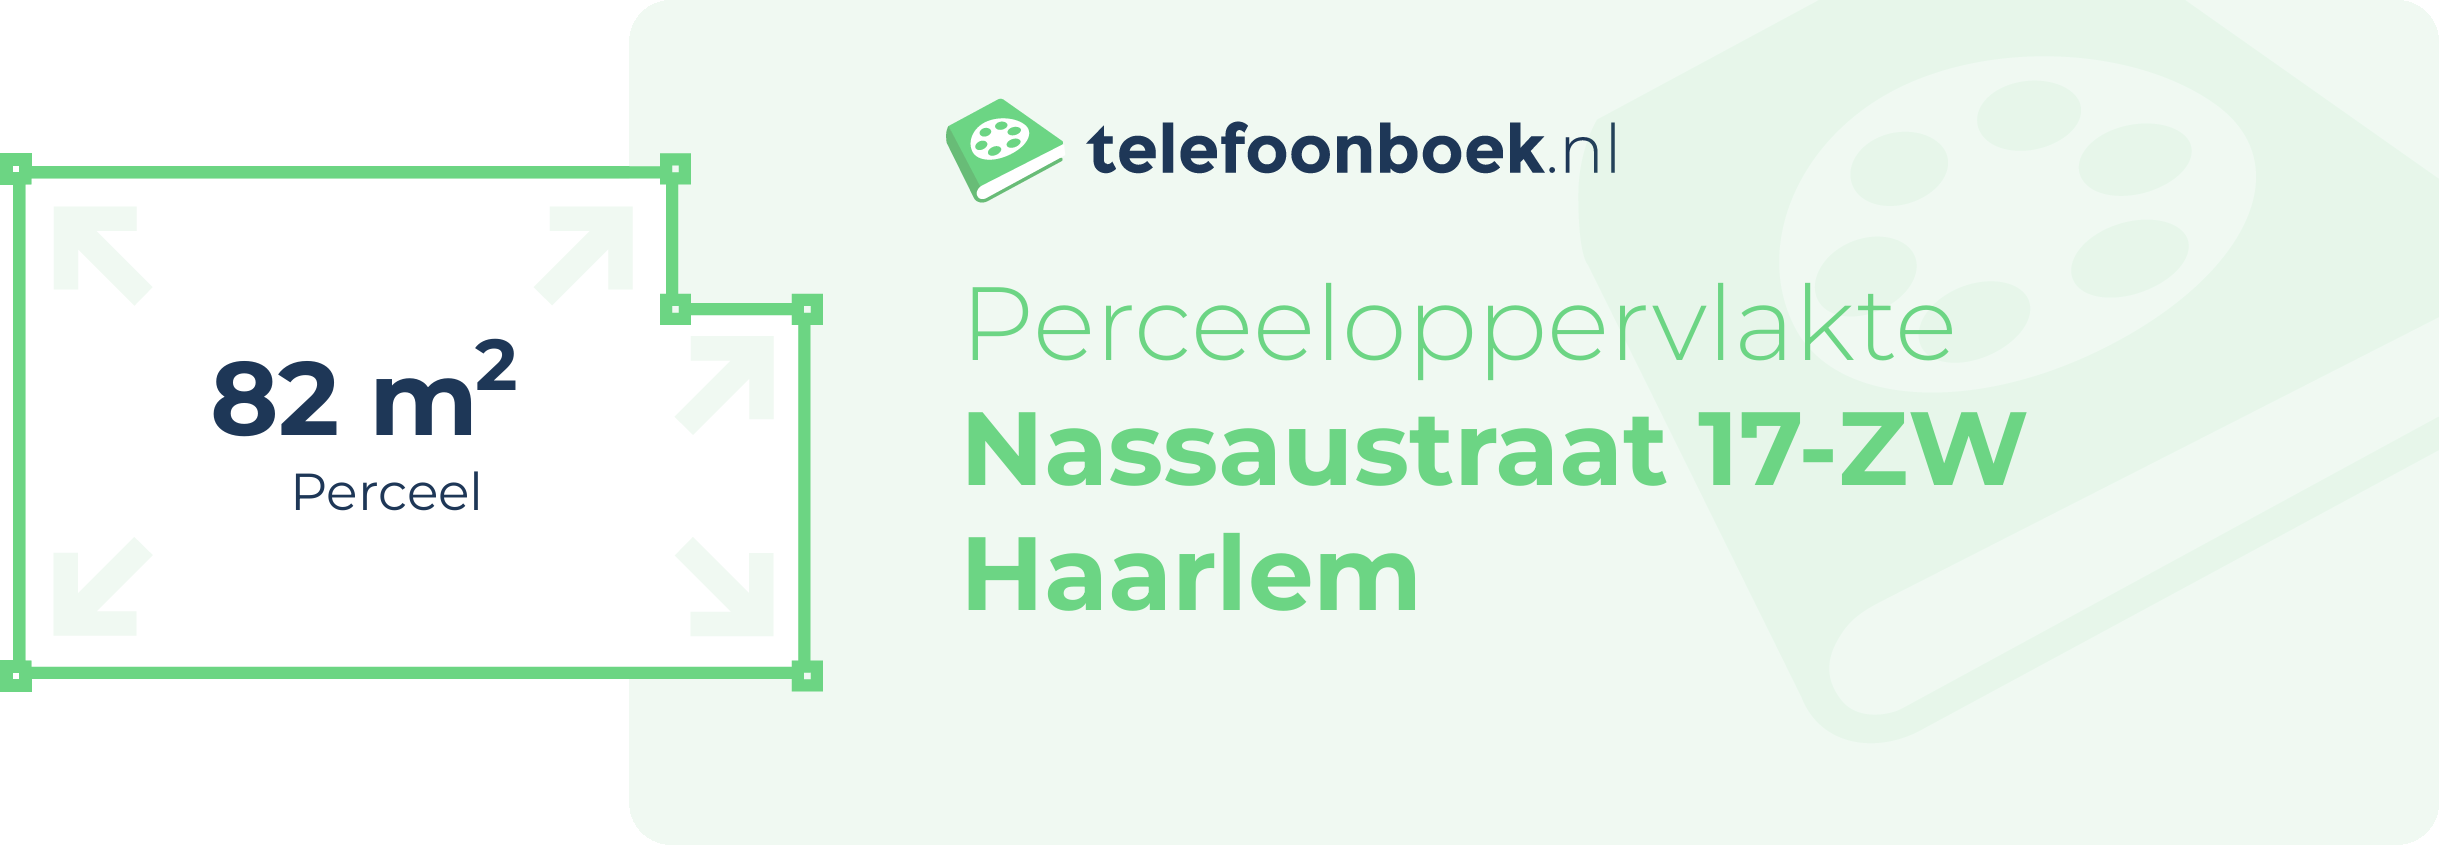 Perceeloppervlakte Nassaustraat 17-ZW Haarlem